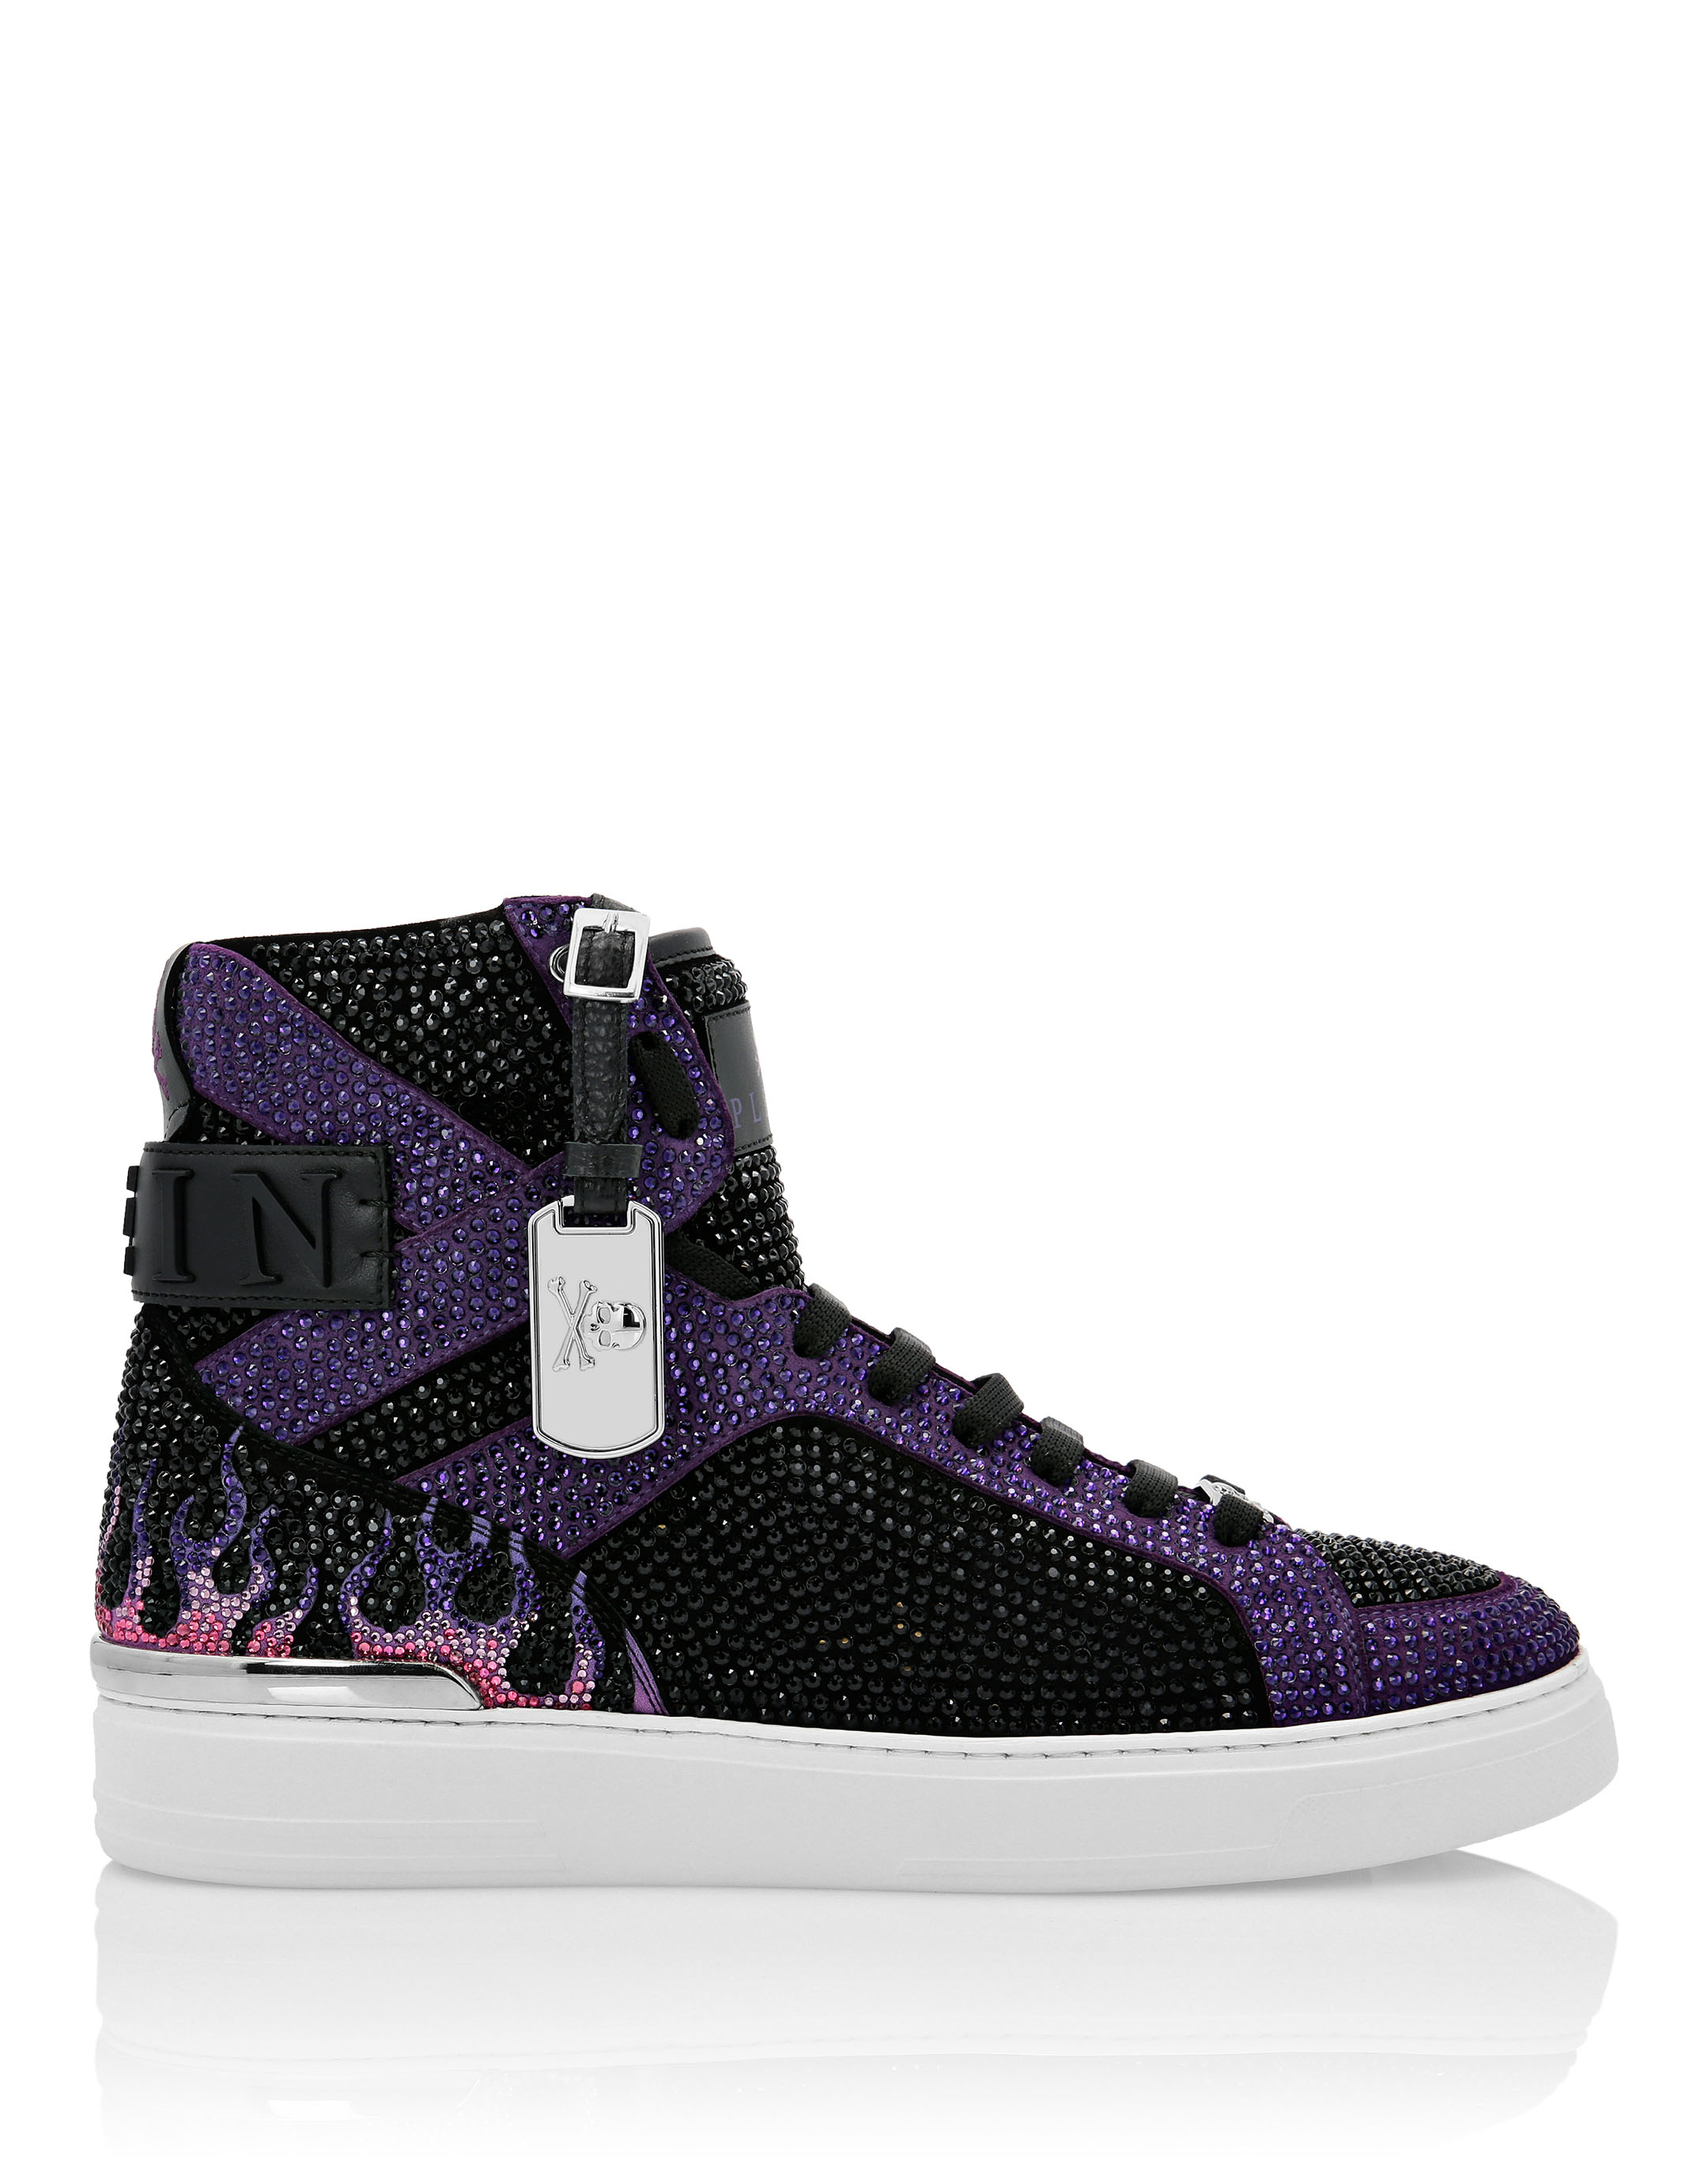 PHILIPP PLEIN, Purple Women's Sneakers